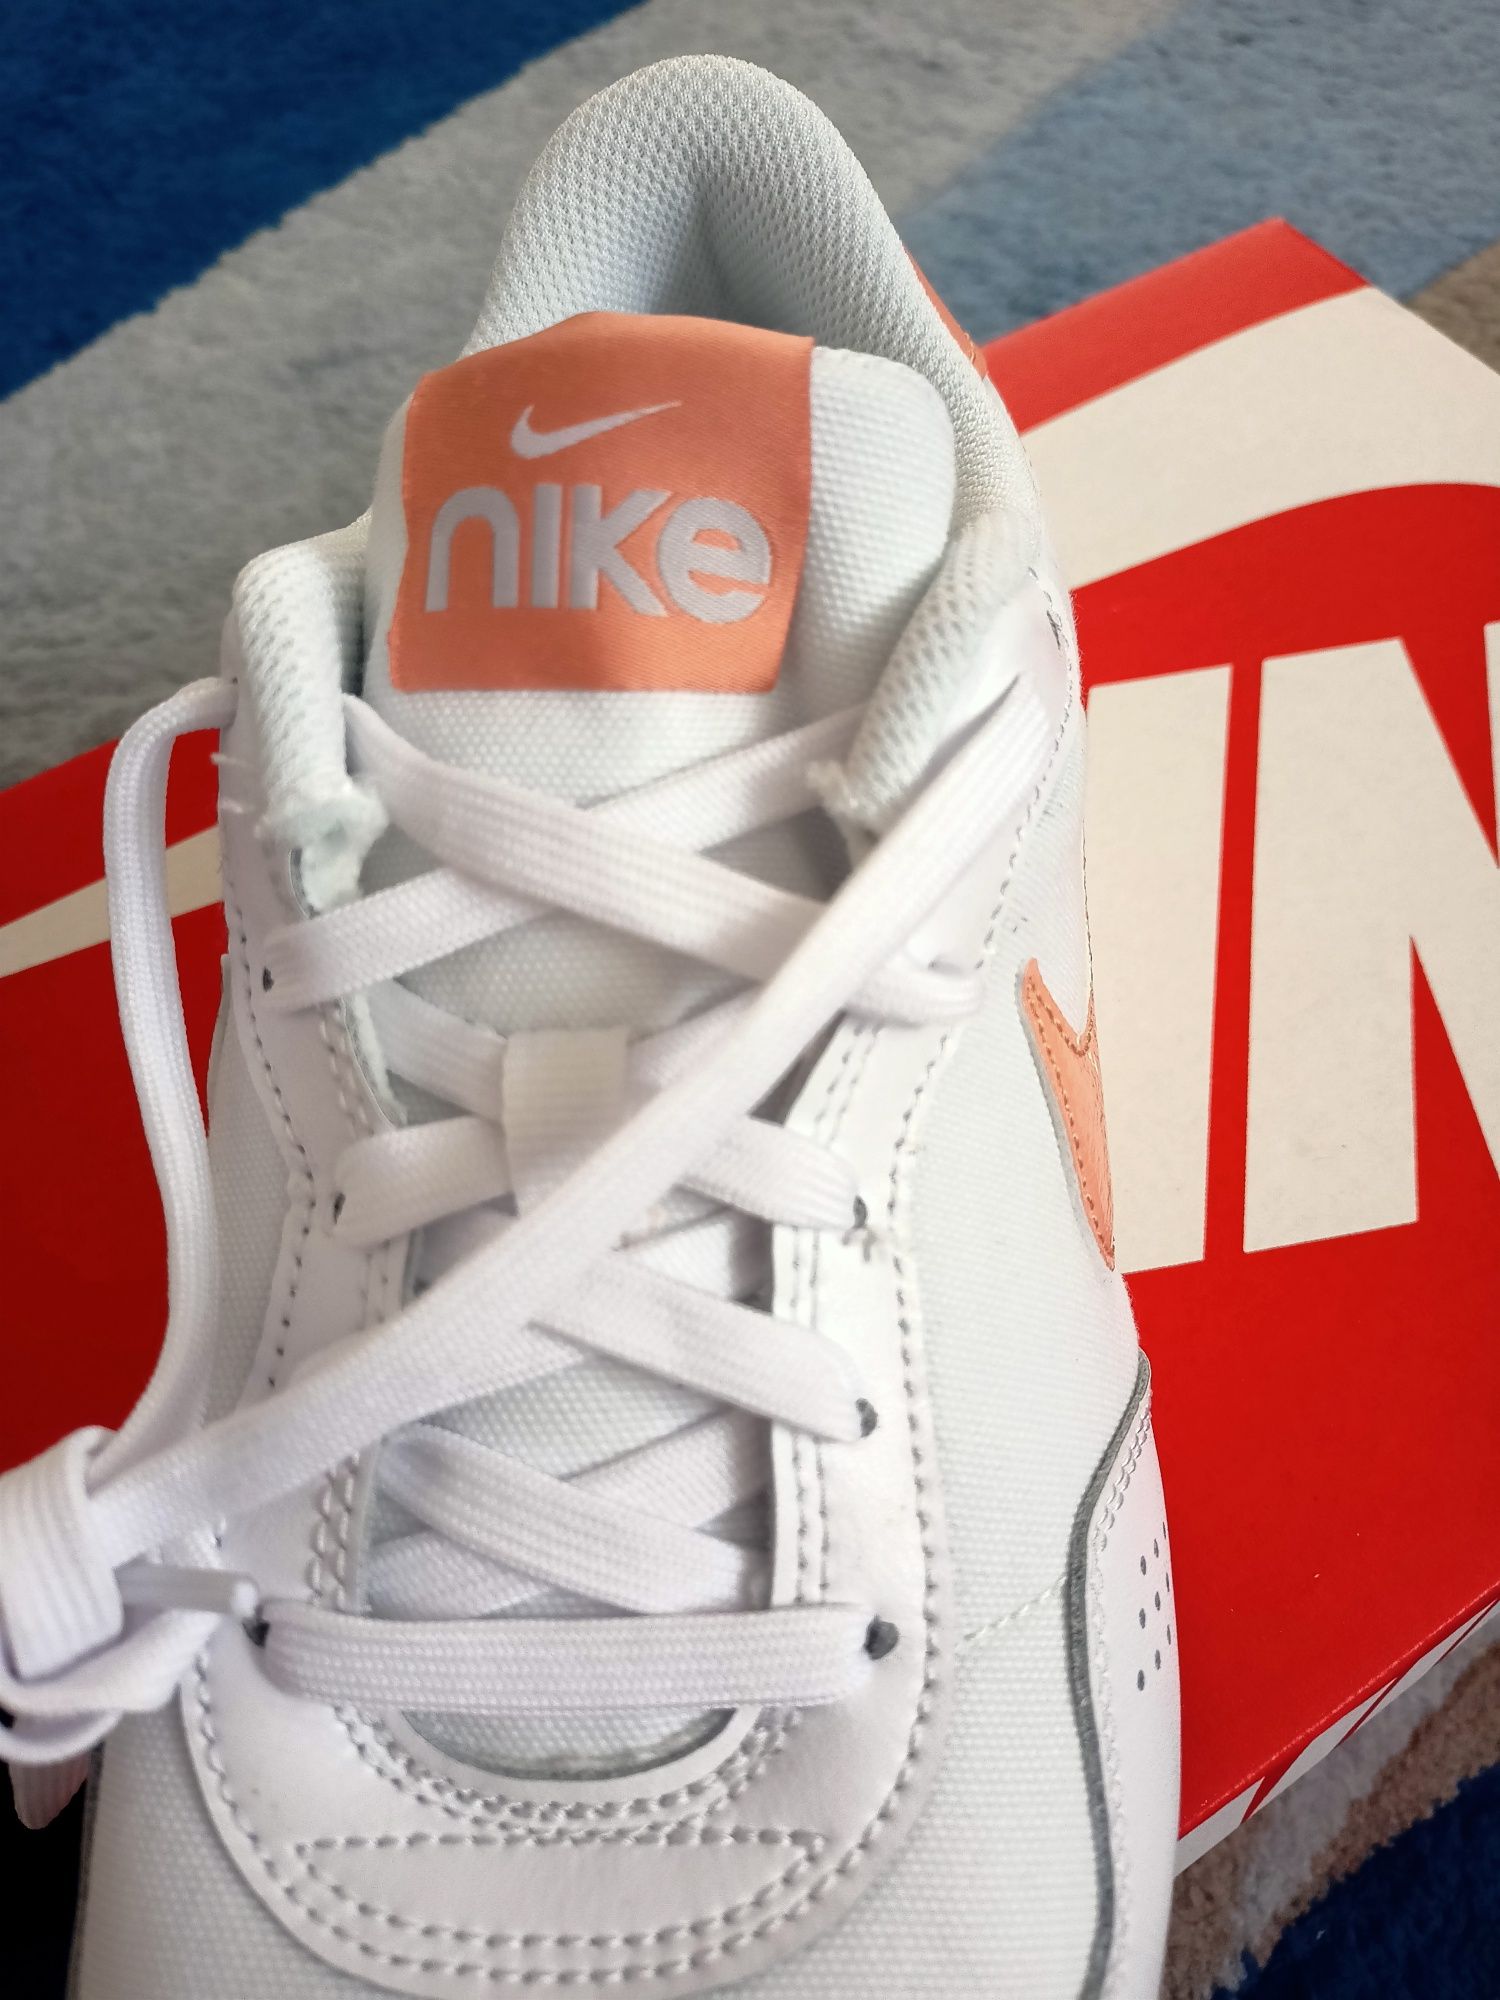 Buty damskie Nike - nowe, gwarancja